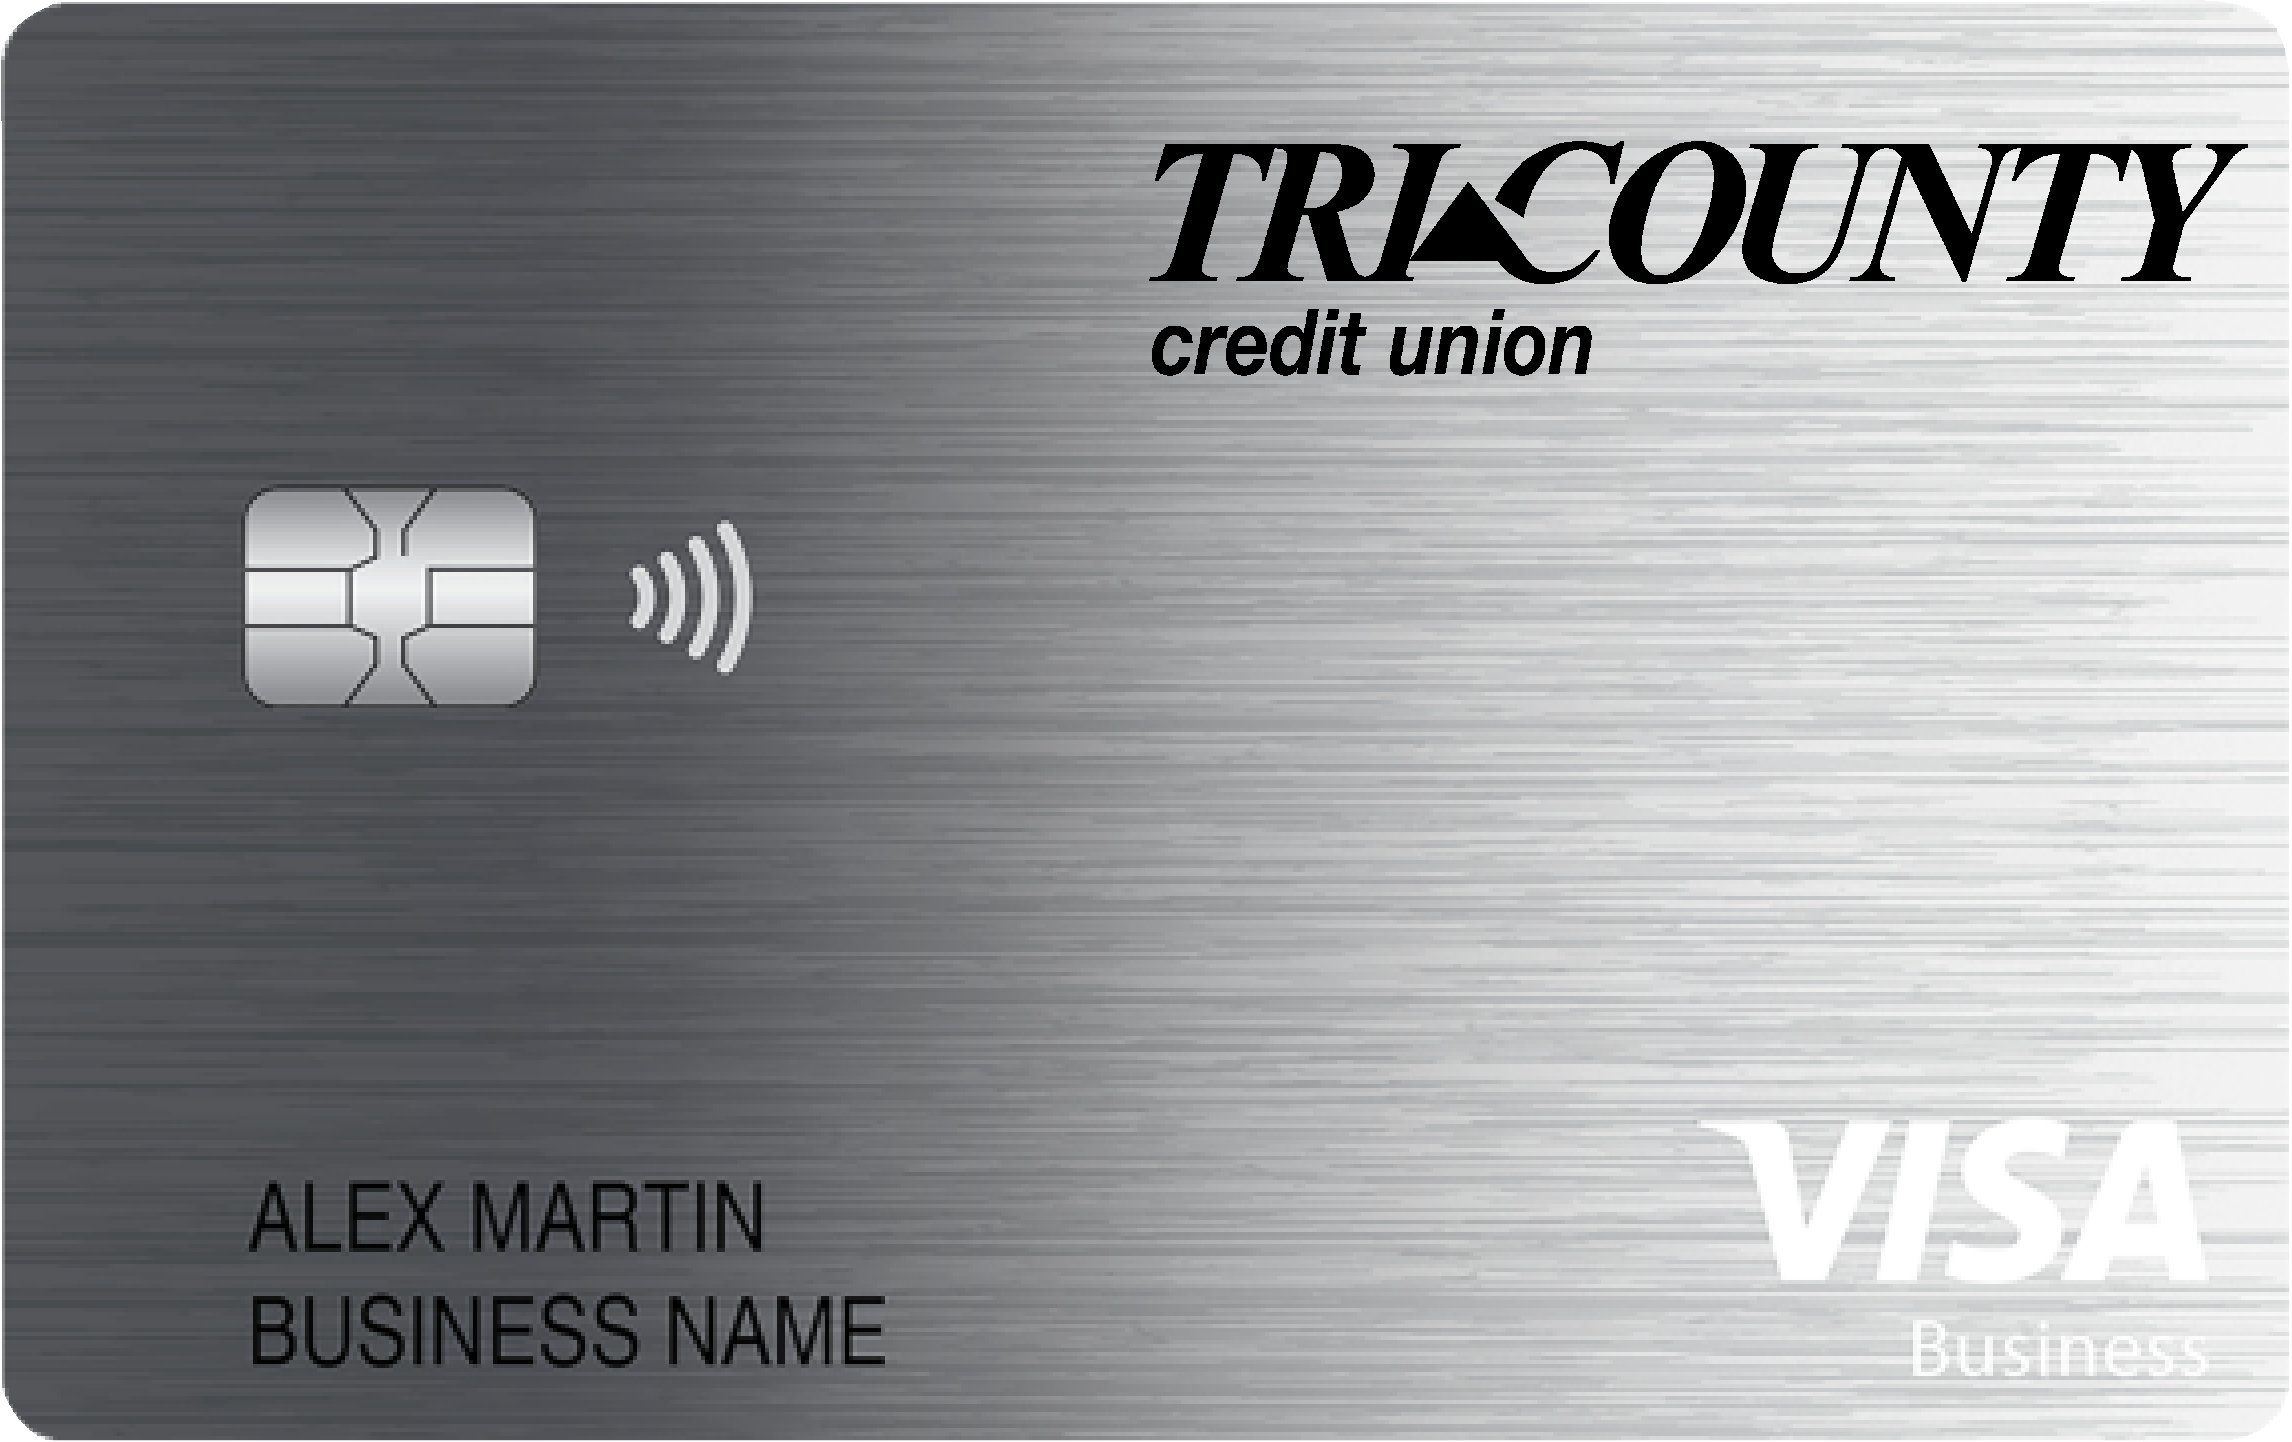 Tri County Credit Union